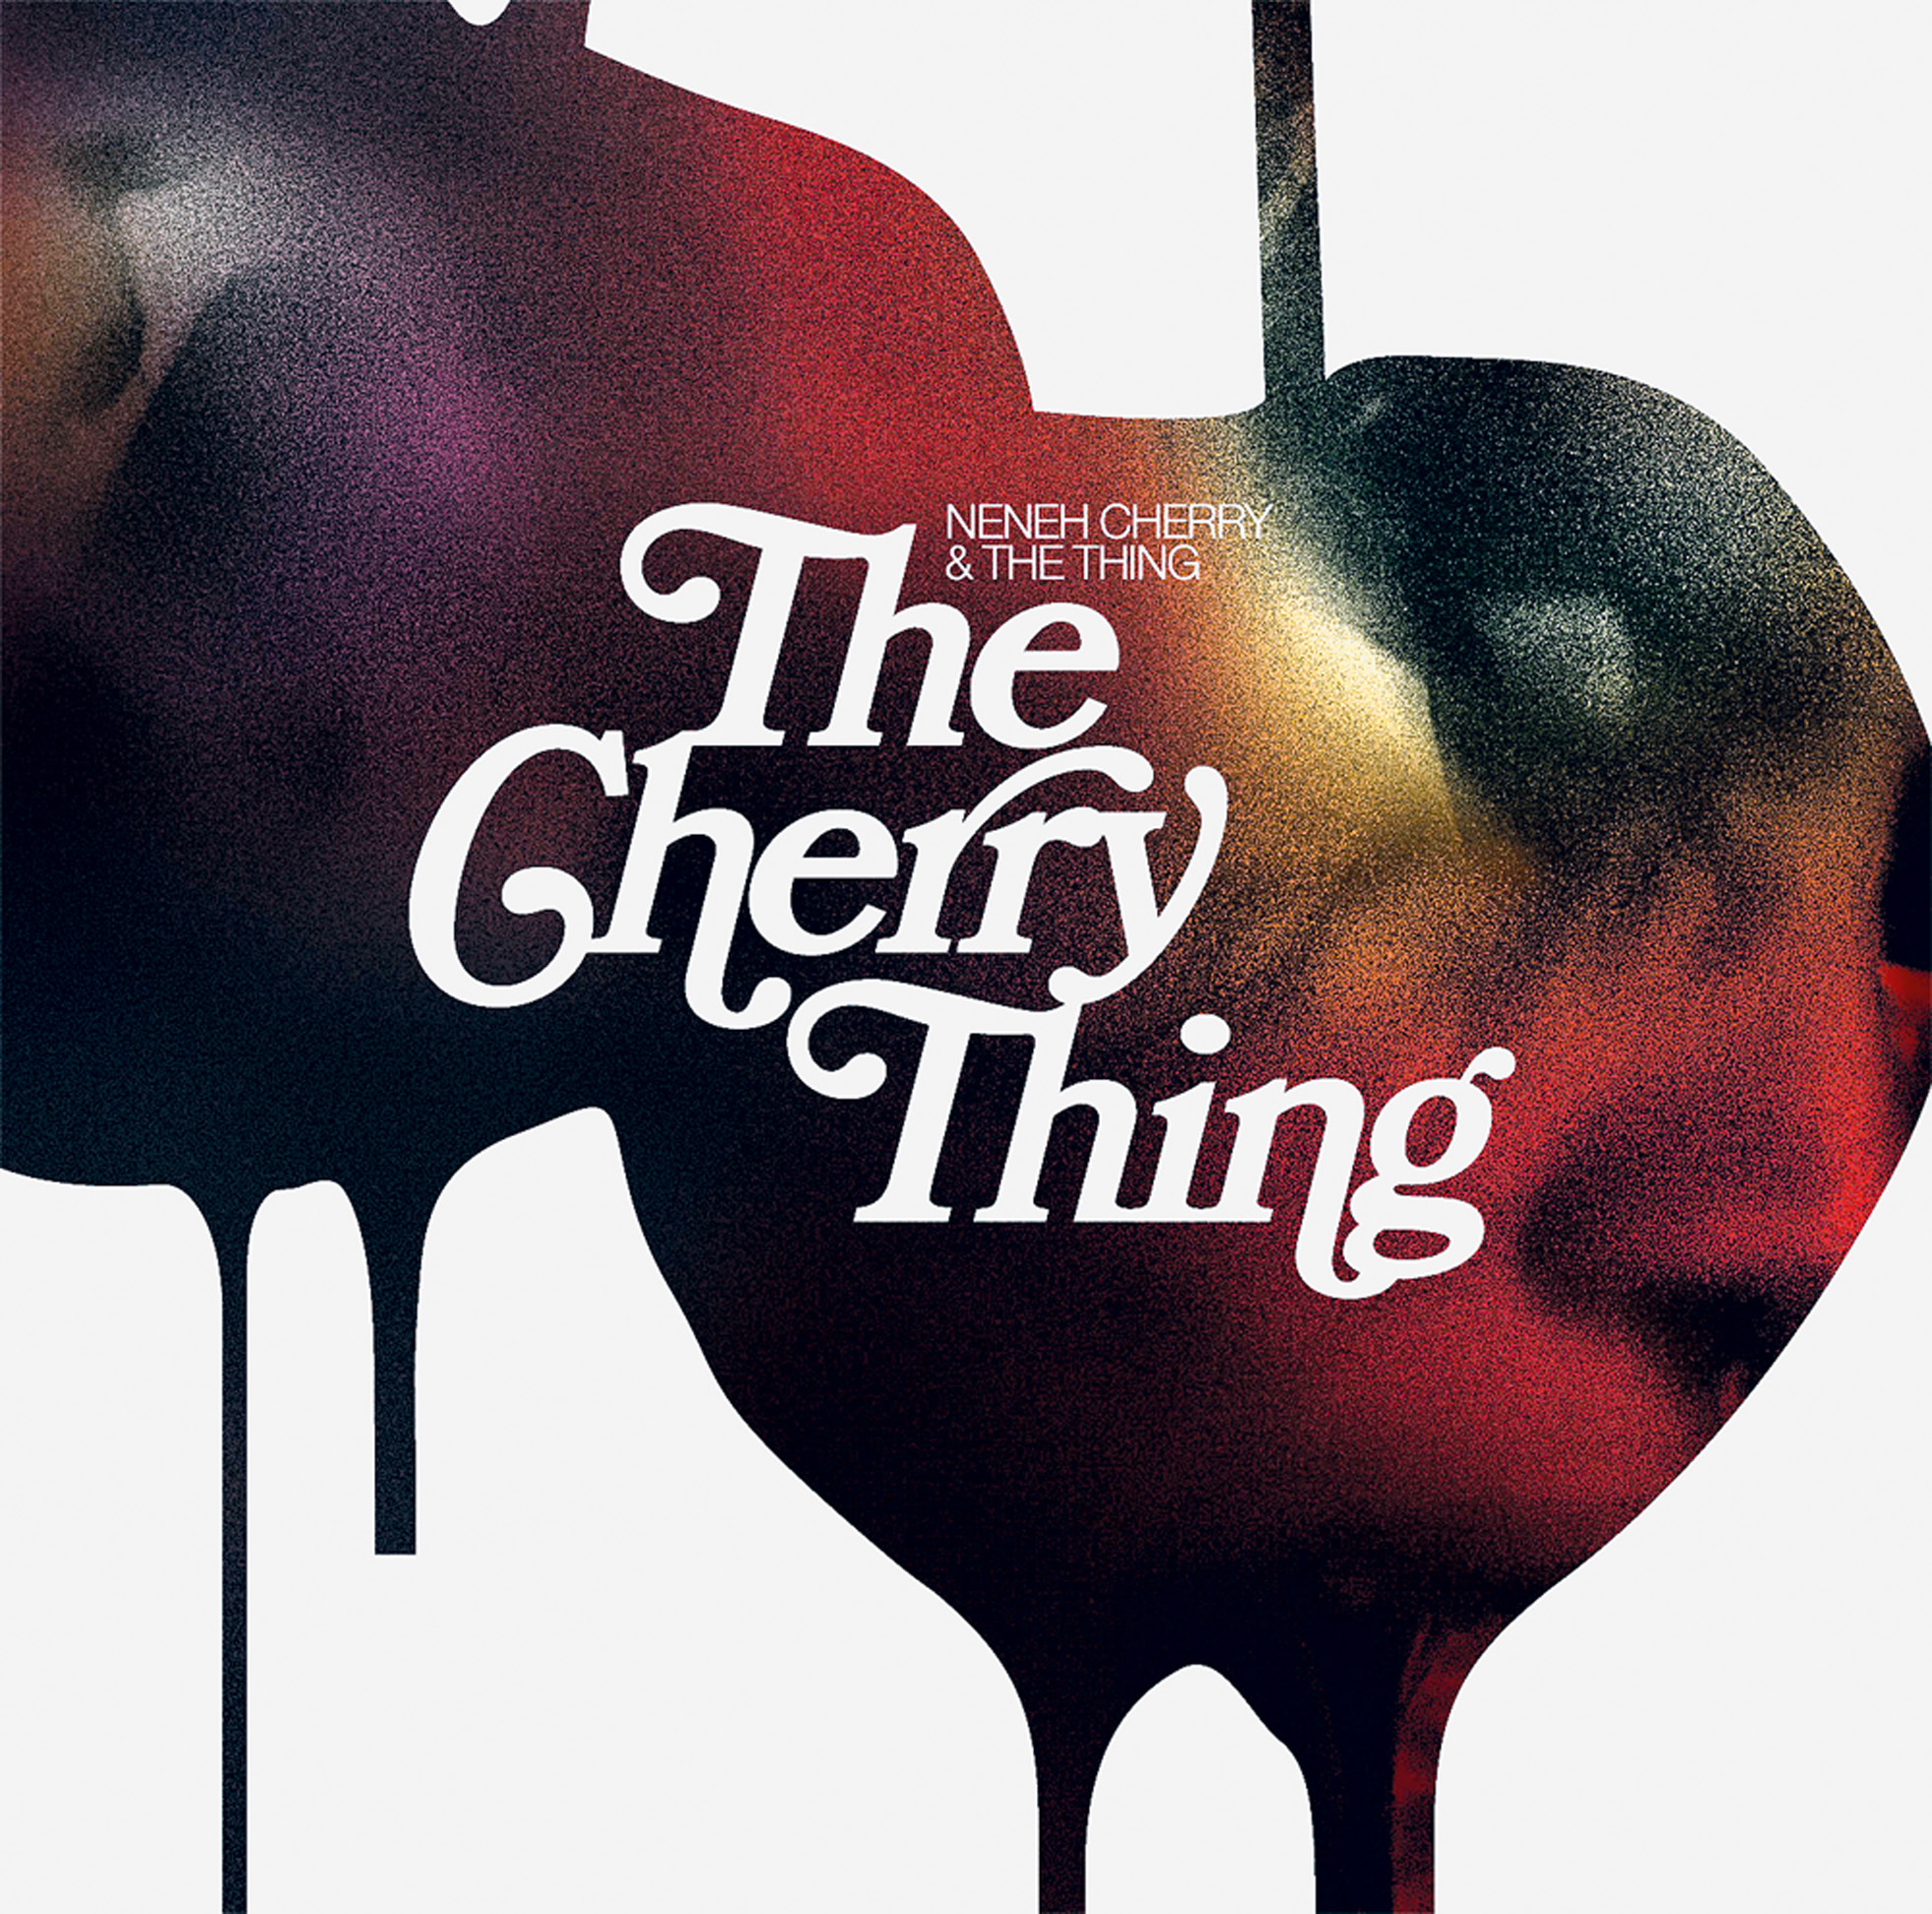 Música - The Cherry Thing: Neneh Cherry se junta ao trio escandinavo The Thing e chuta o balde em versões que vão de Stooges e MF Doom e o jazz do pai Don Cherry. (RZ)